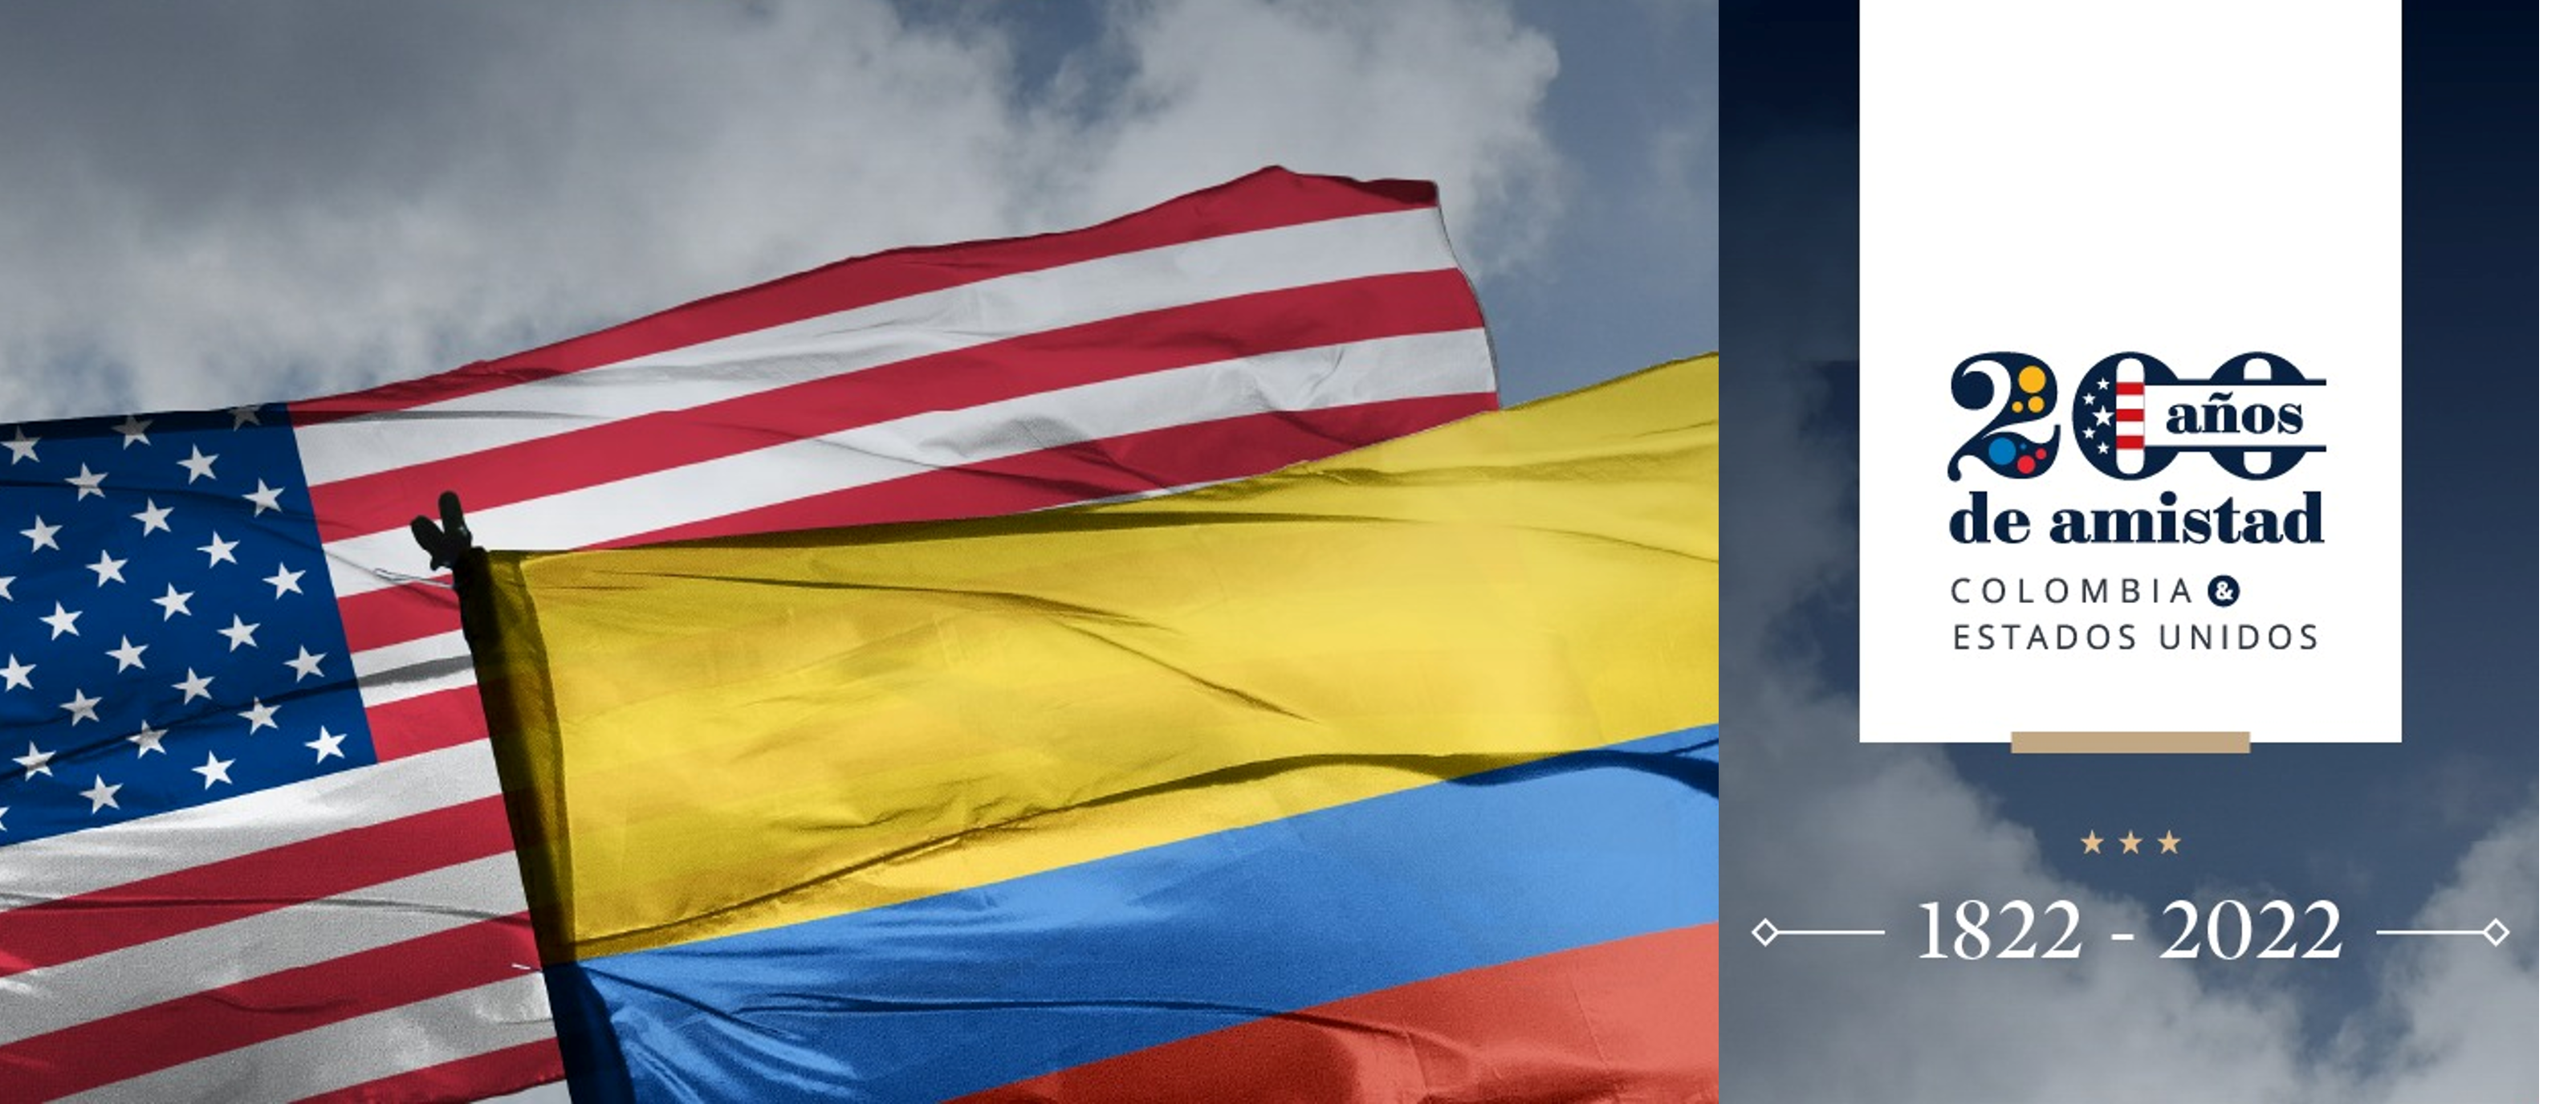 Colombia y Estados Unidos conmemoran 200 años de relaciones diplomáticas